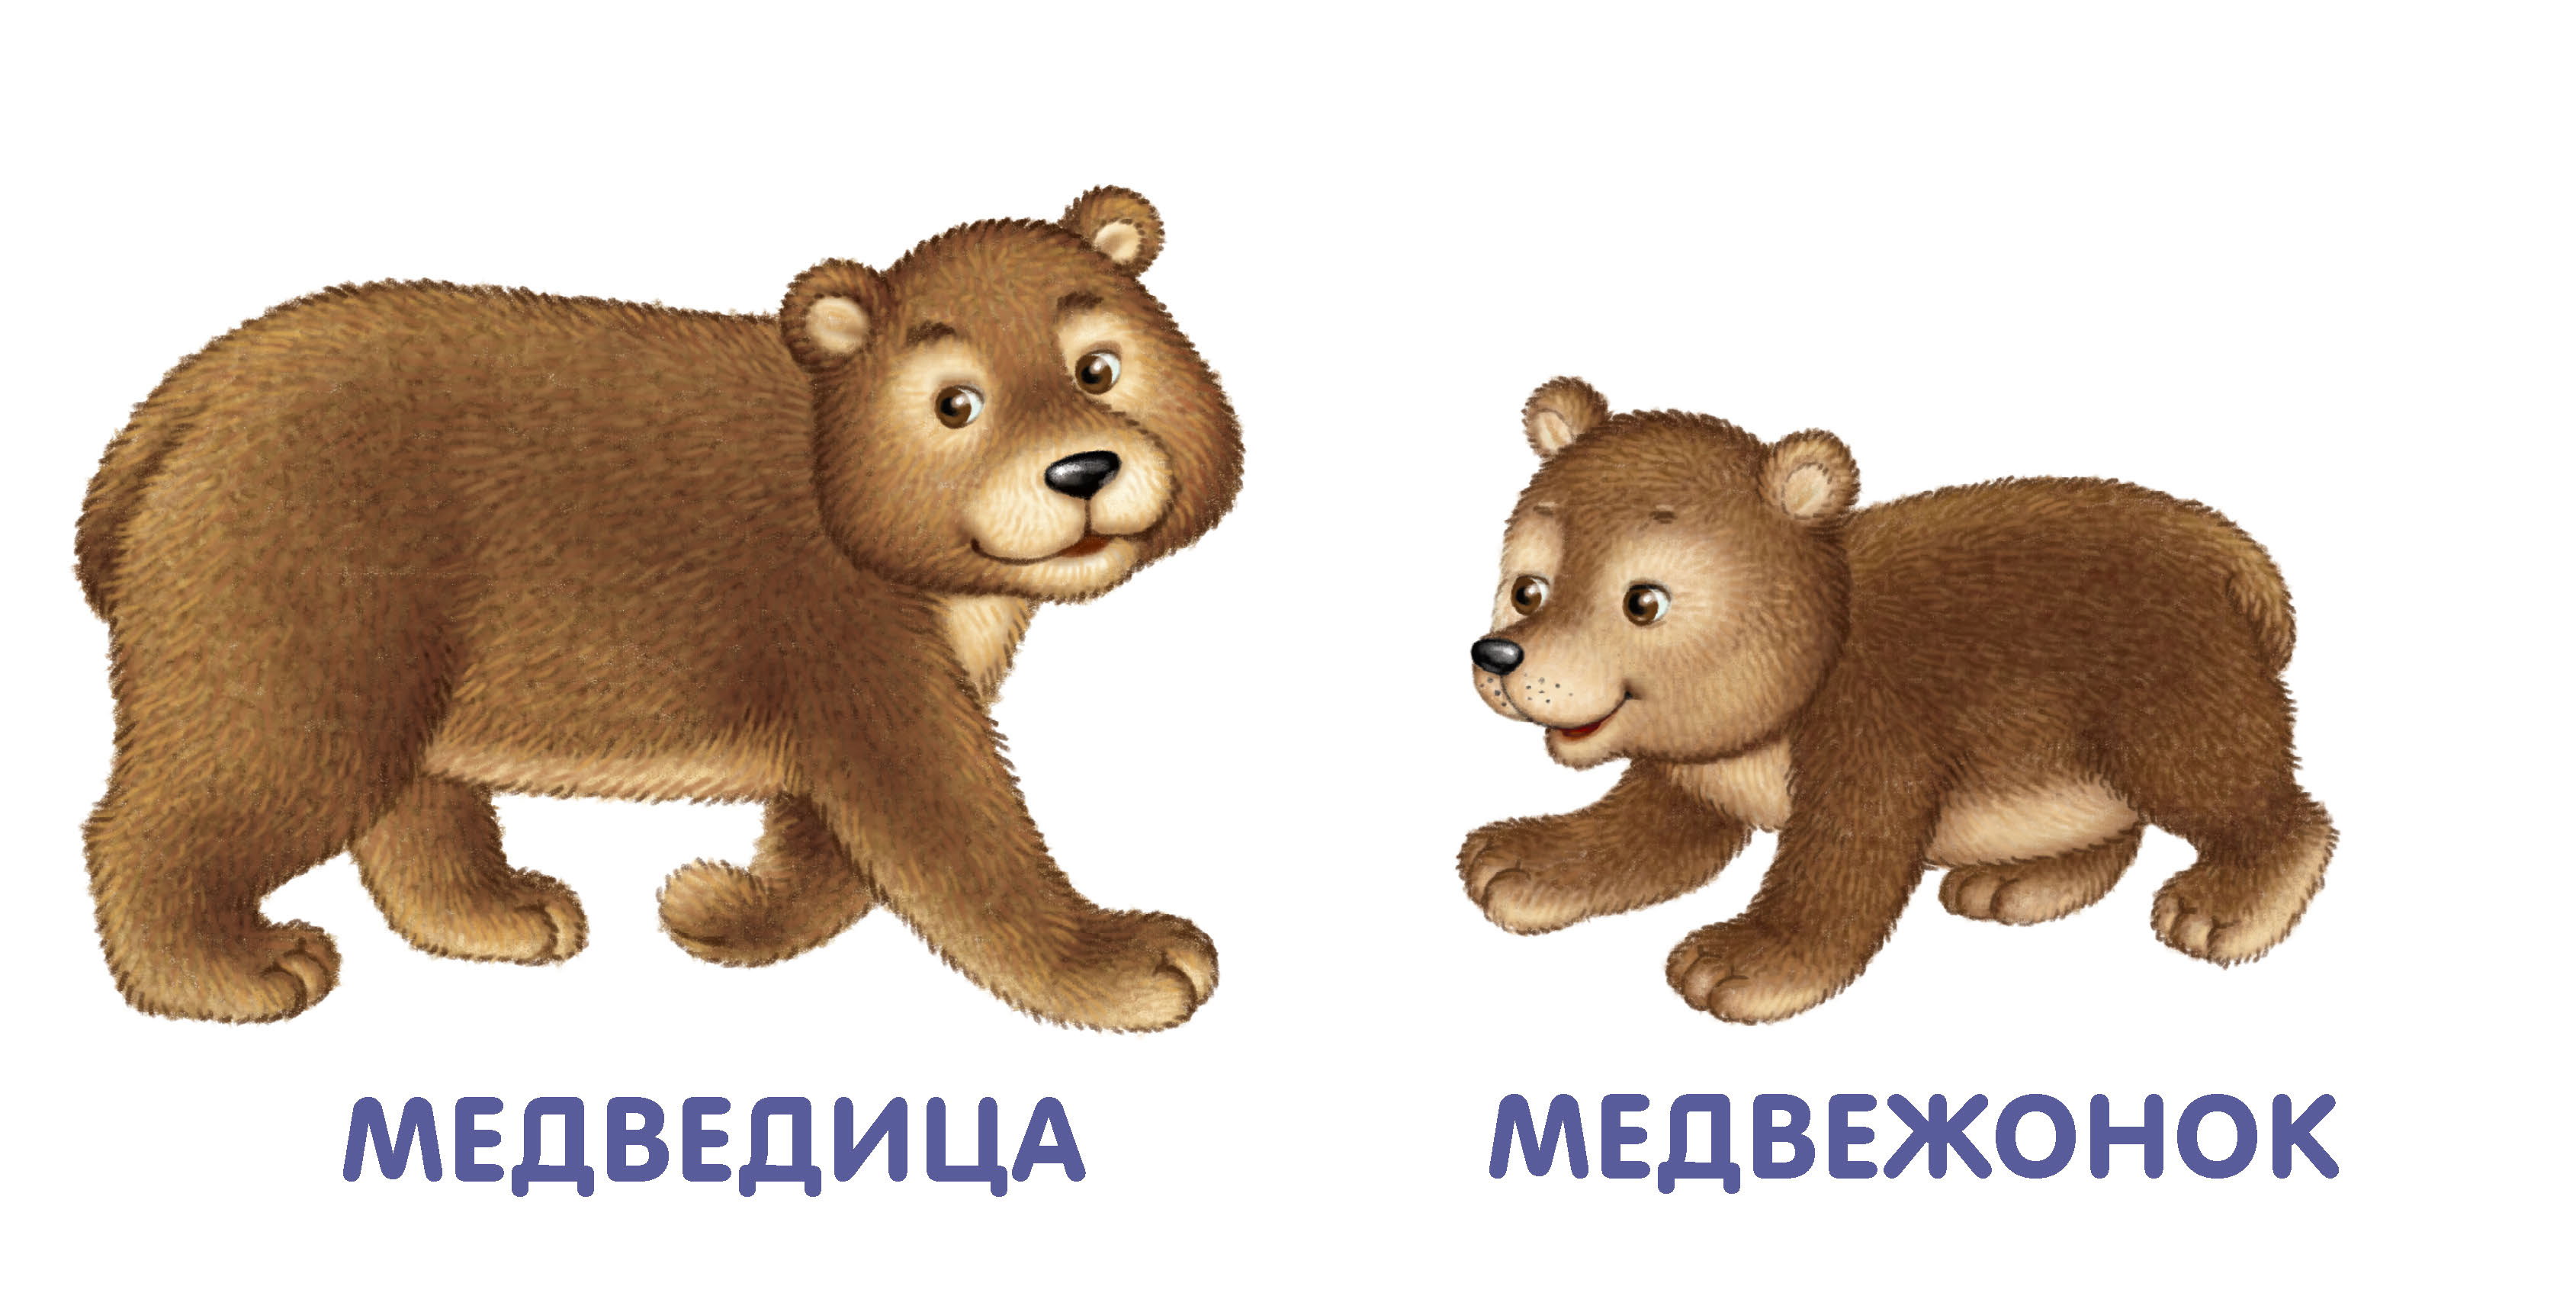 Медведь карточка для детей